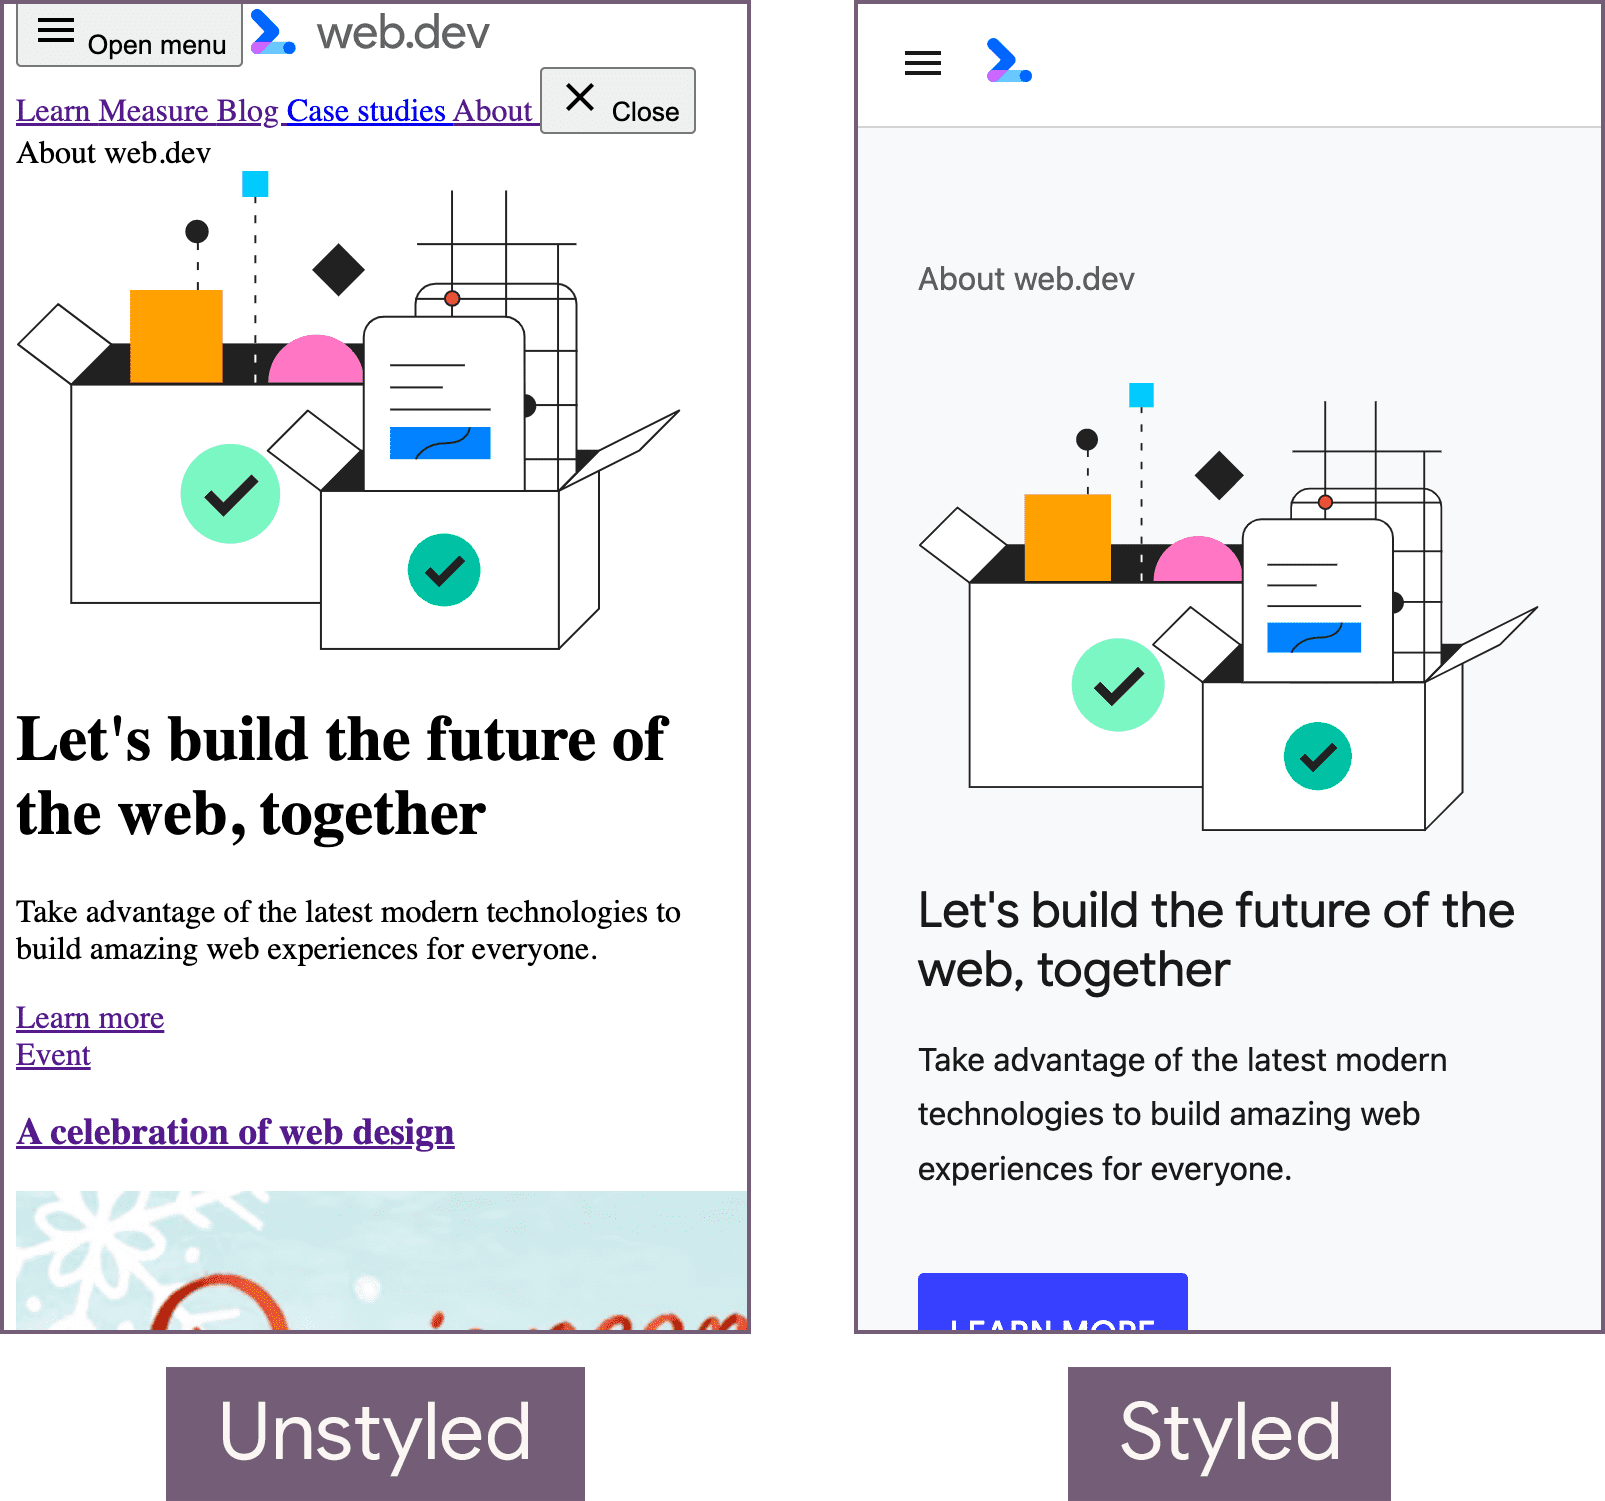 หน้าแรกของ web.dev อยู่ในสถานะที่ไม่มีรูปแบบ (ซ้าย) และอยู่ในรูปแบบที่จัดรูปแบบแล้ว (ขวา)